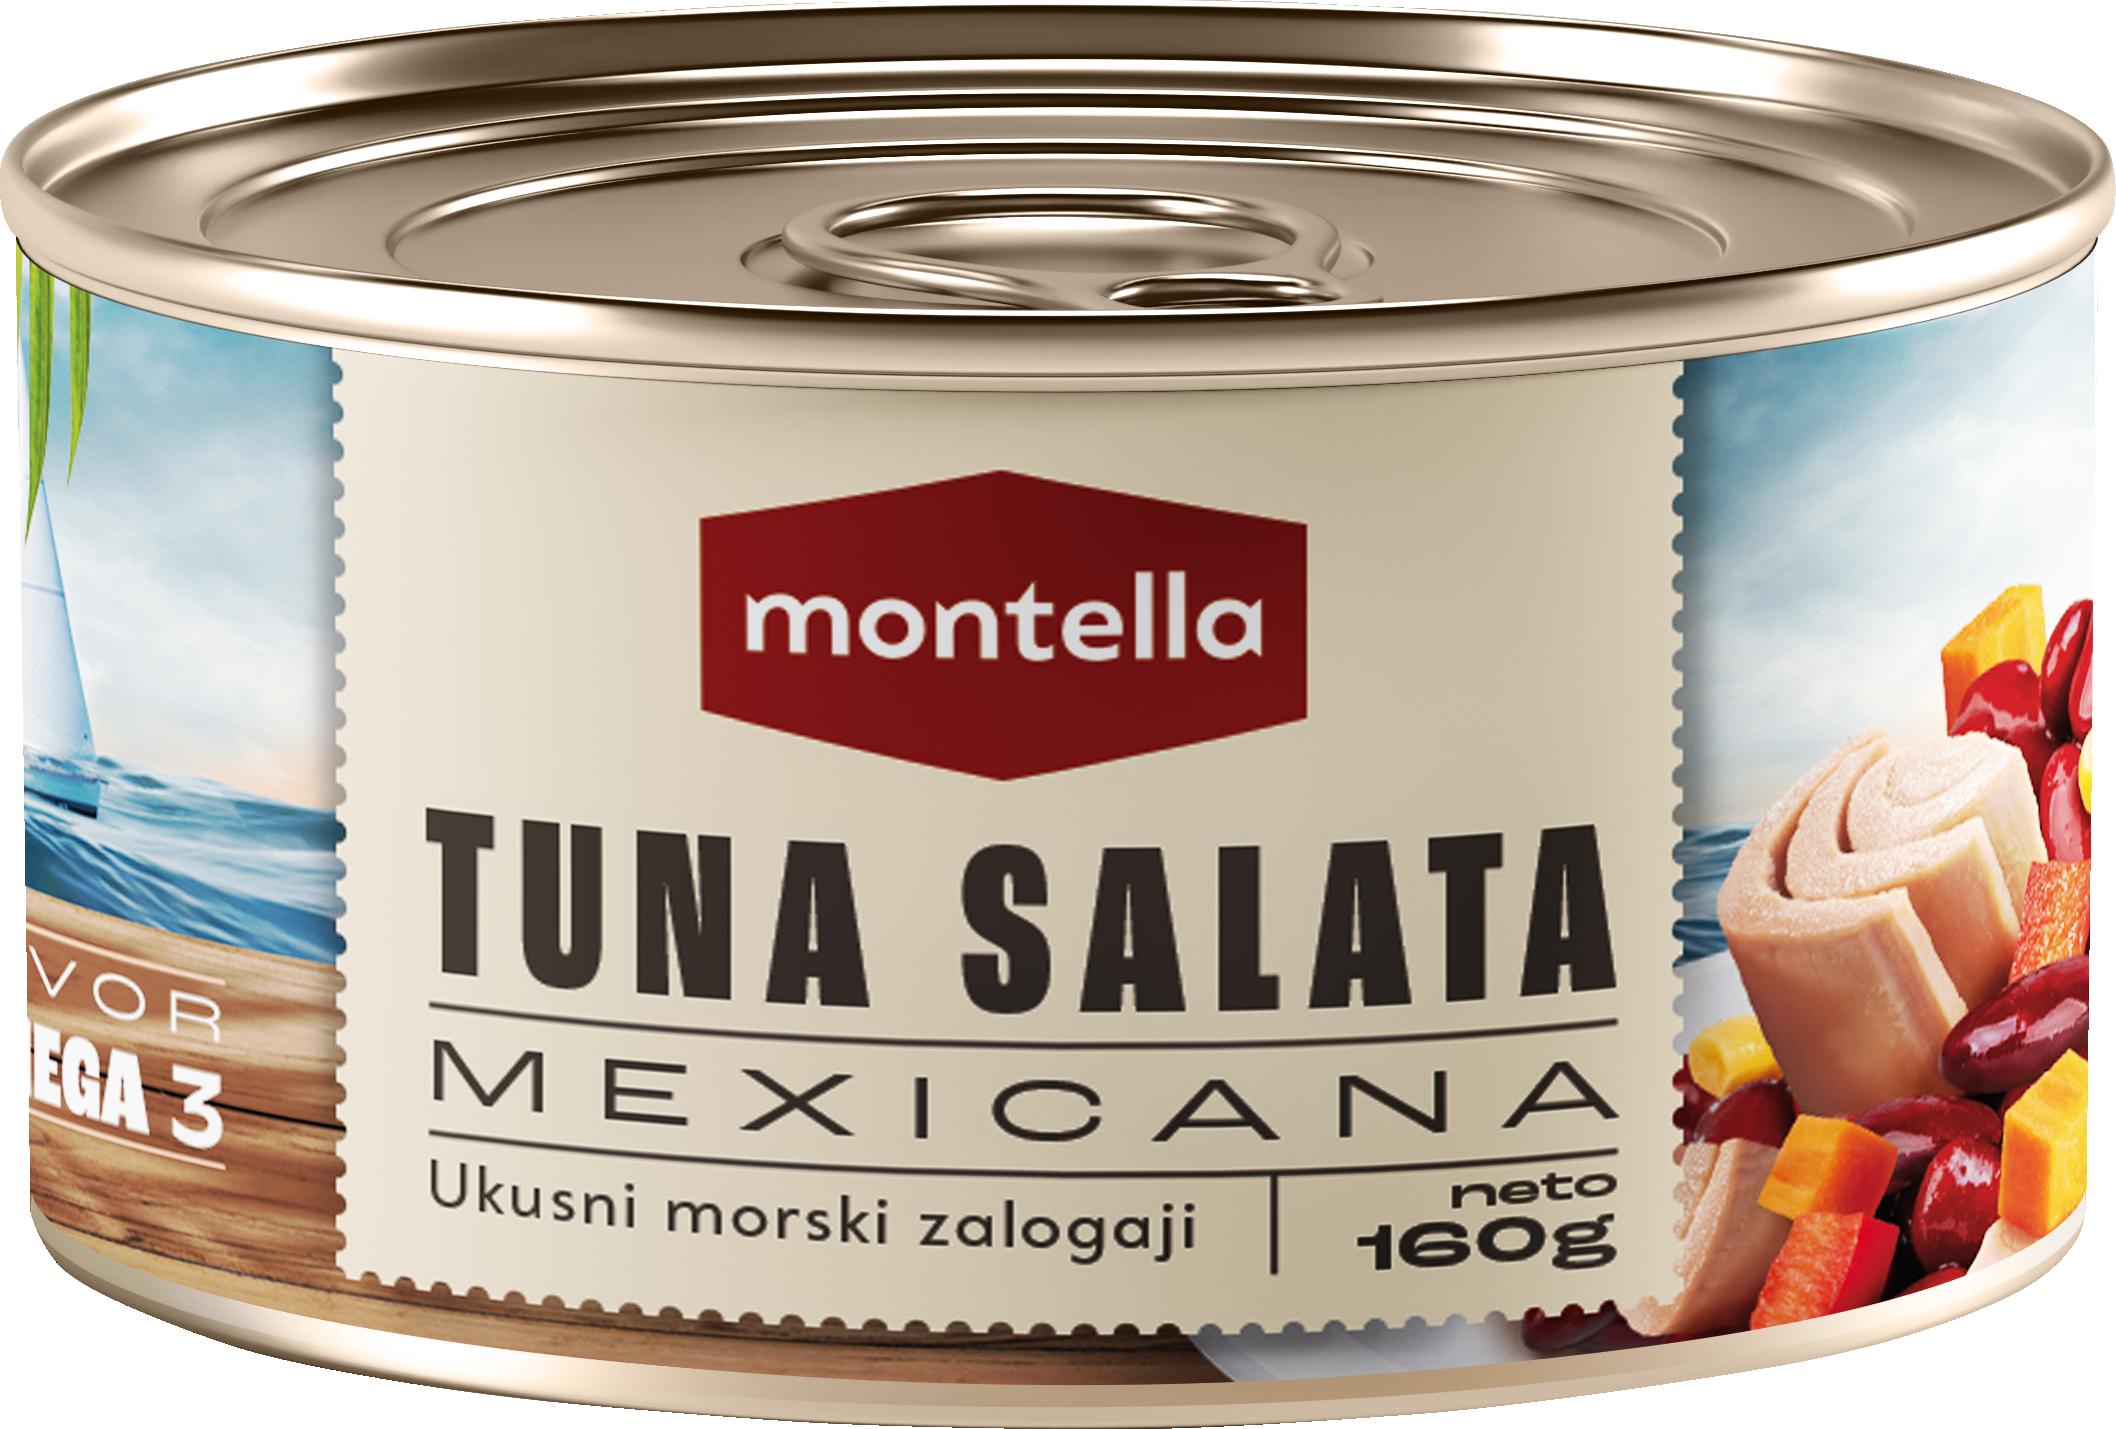 Slika za Tuna salata Montella  Mexicana 160g